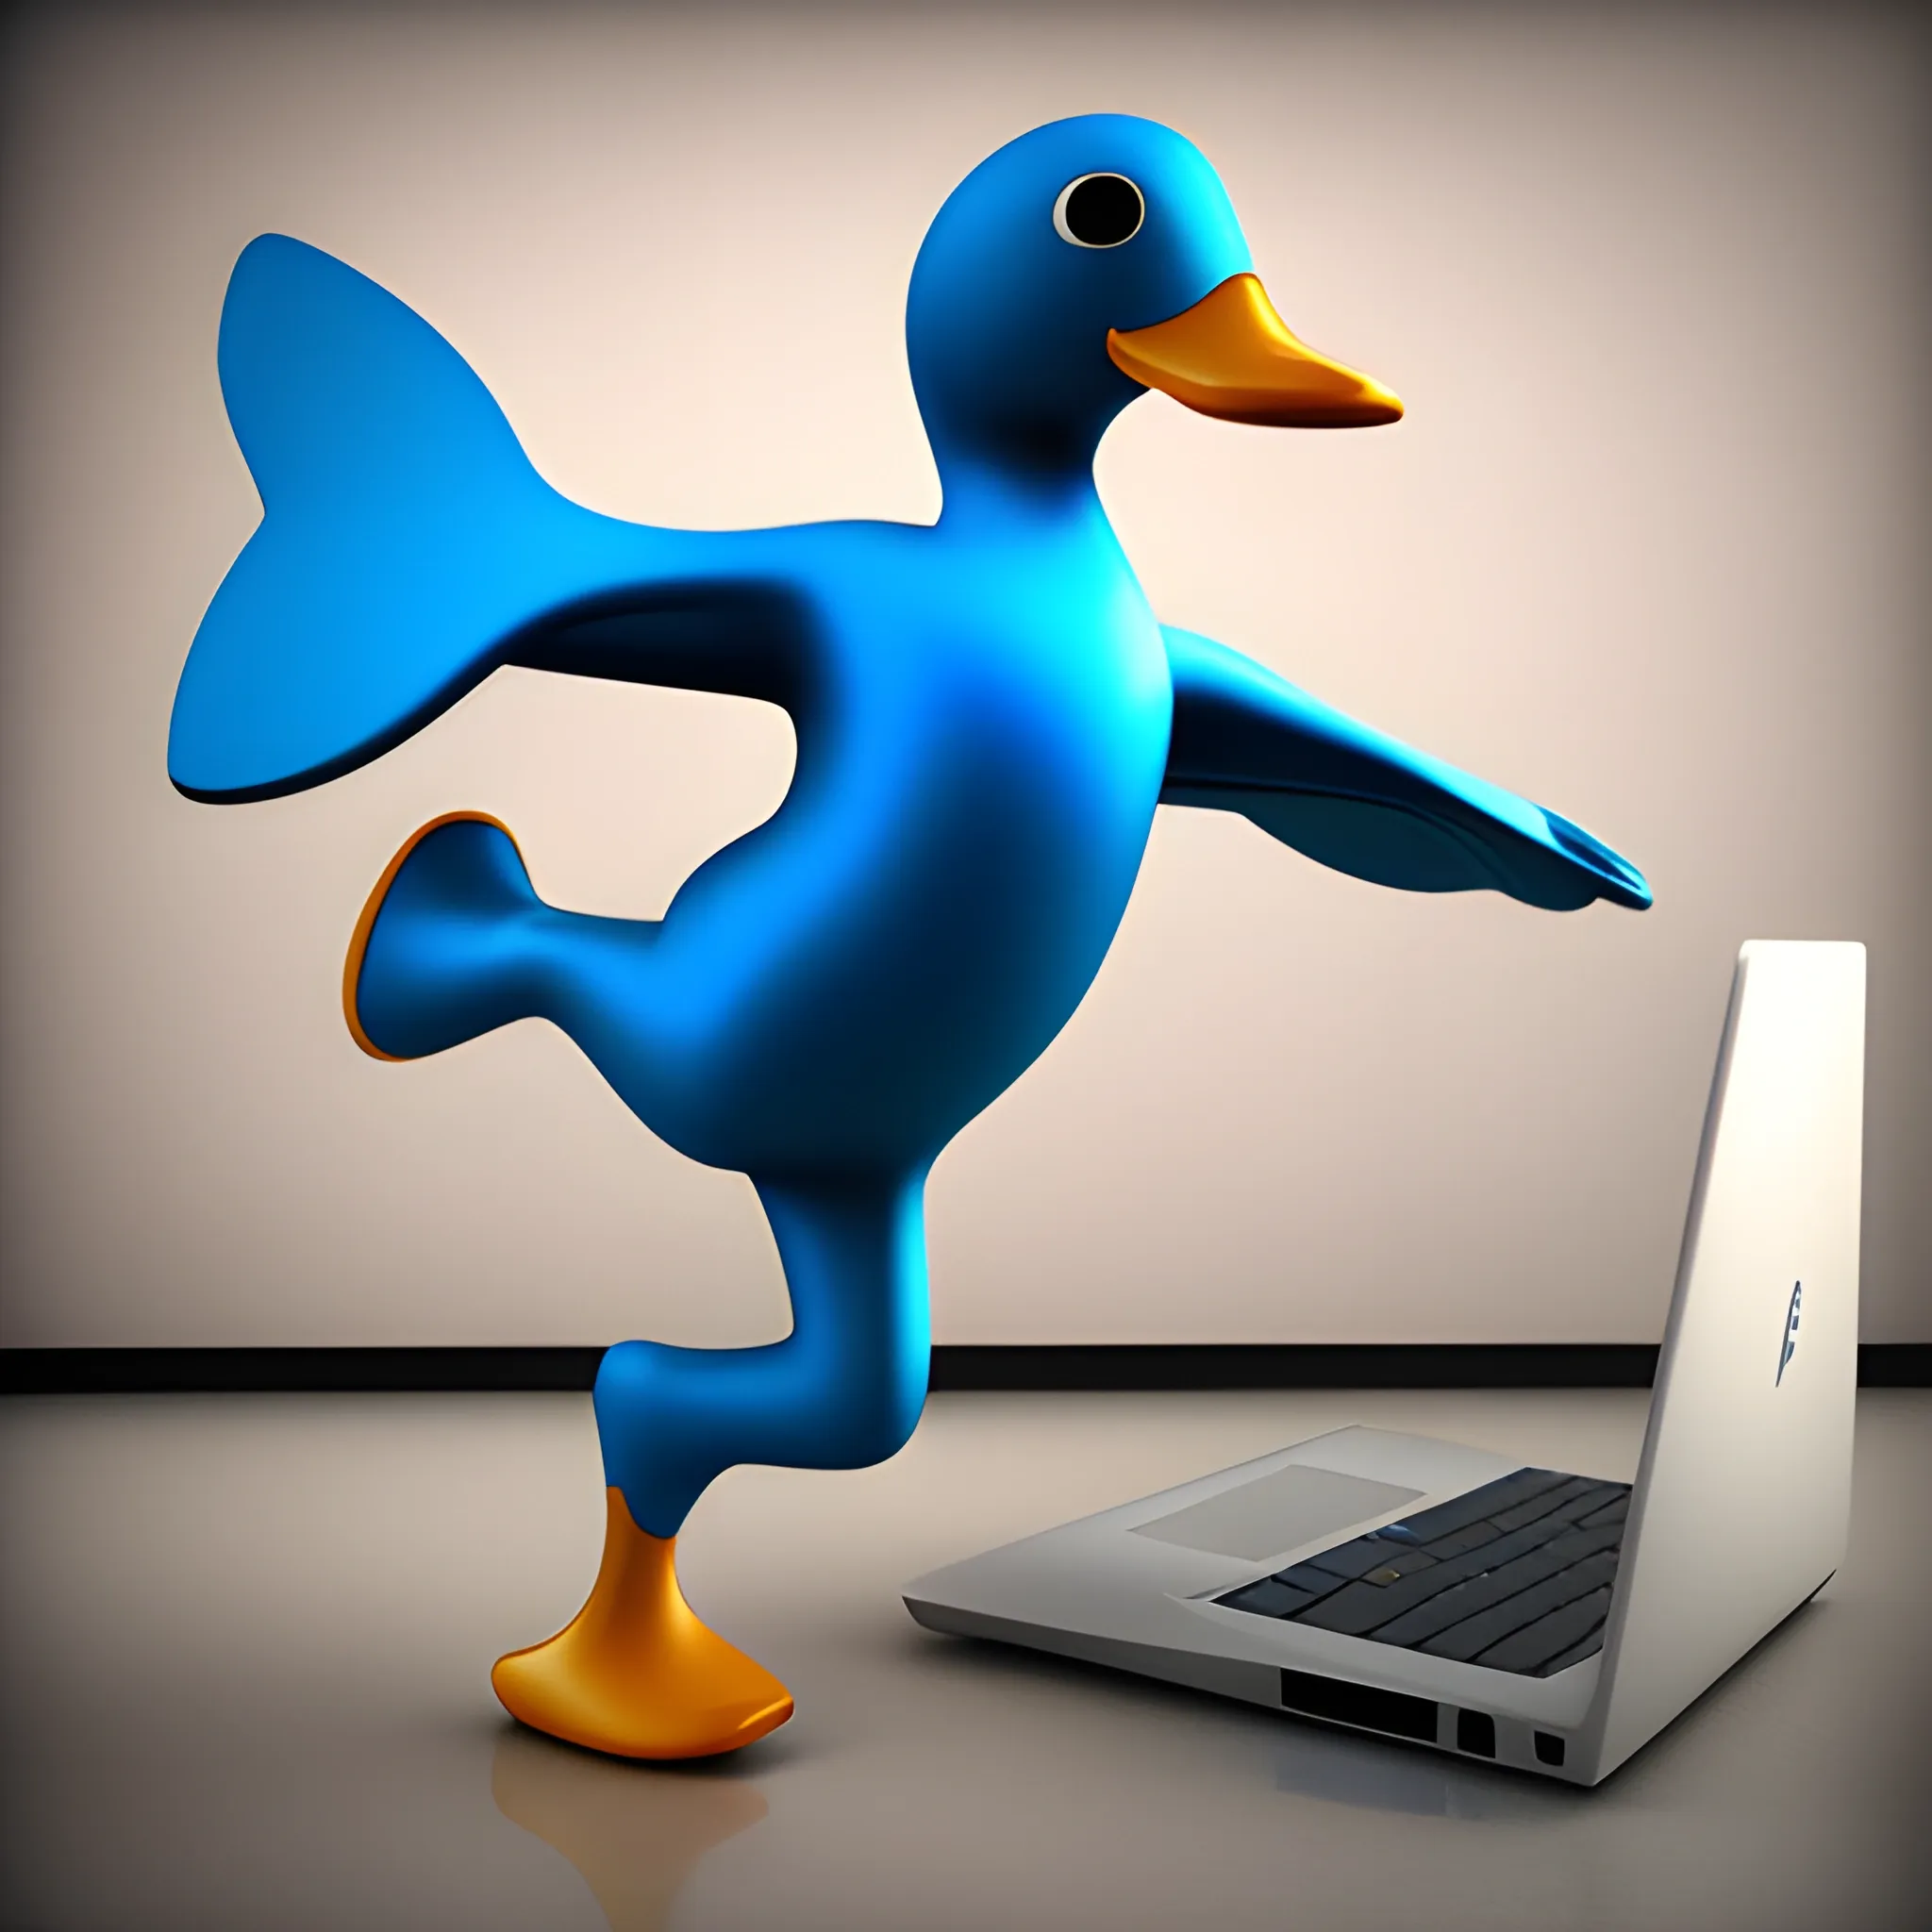 Blue duck, dancing, laptop in hand,,, 3D